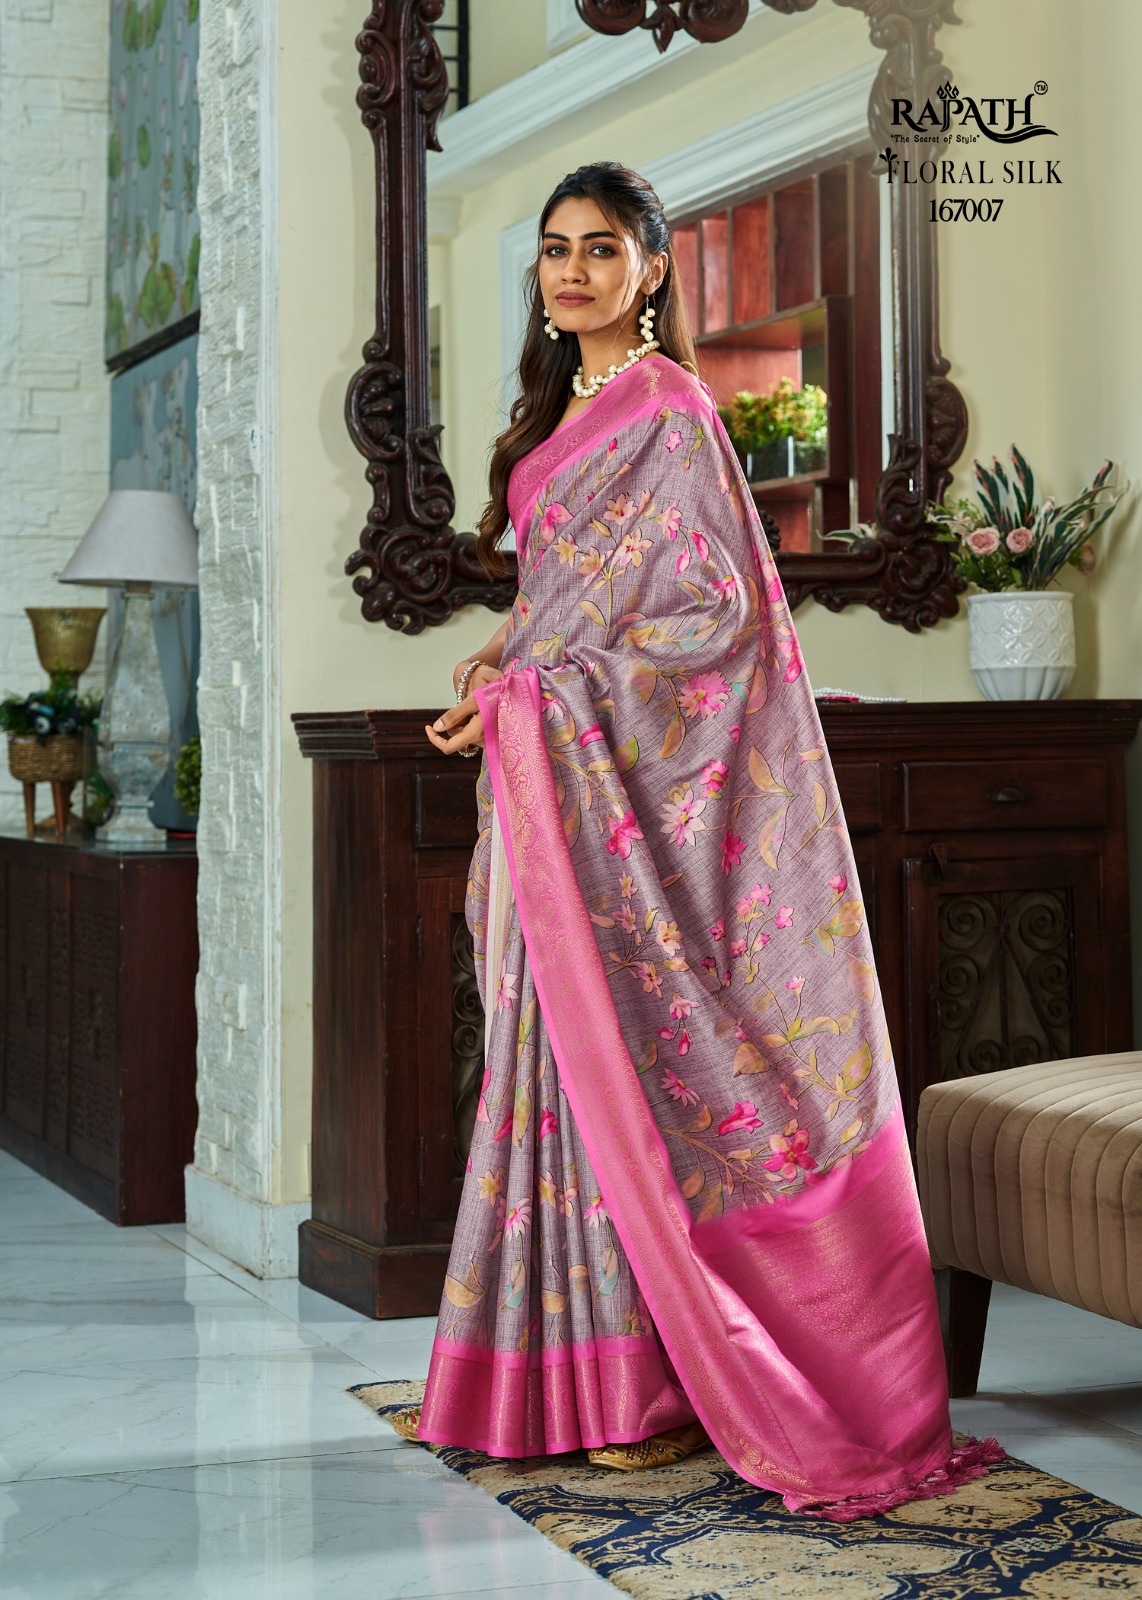 Rajpath Surmai Silk collection 4